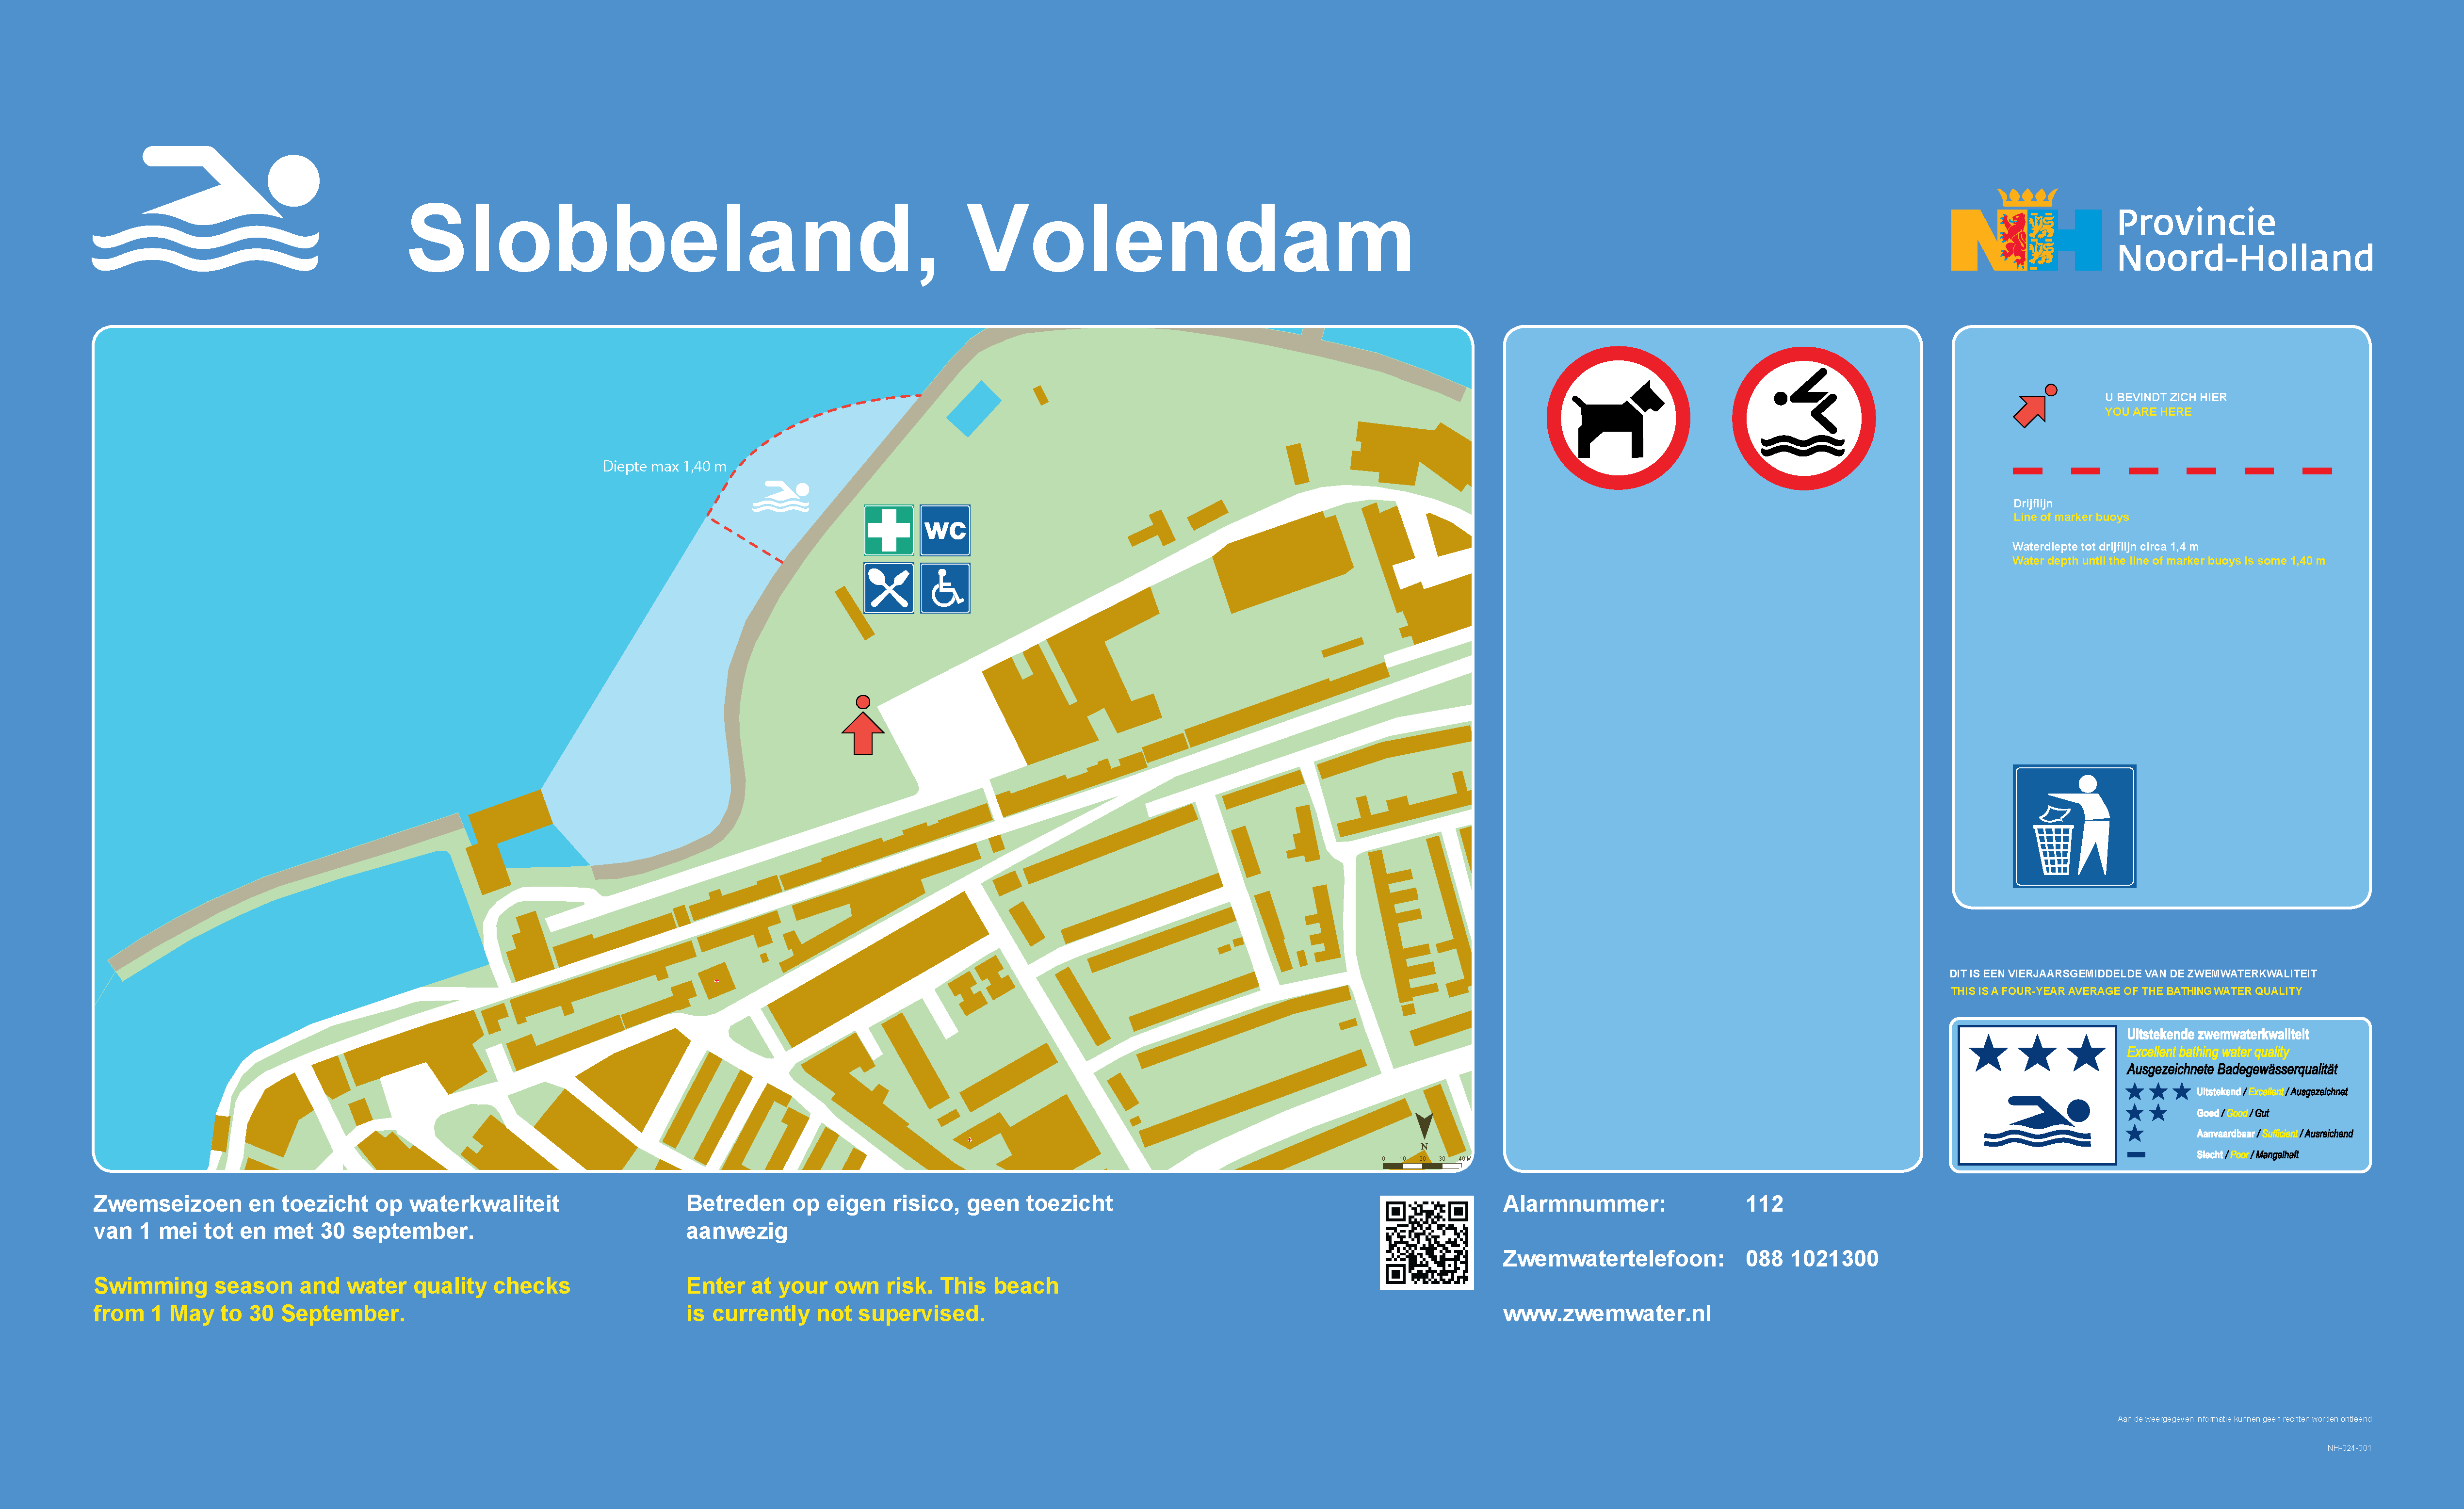 Het informatiebord bij zwemlocatie Slobbeland, Volendam